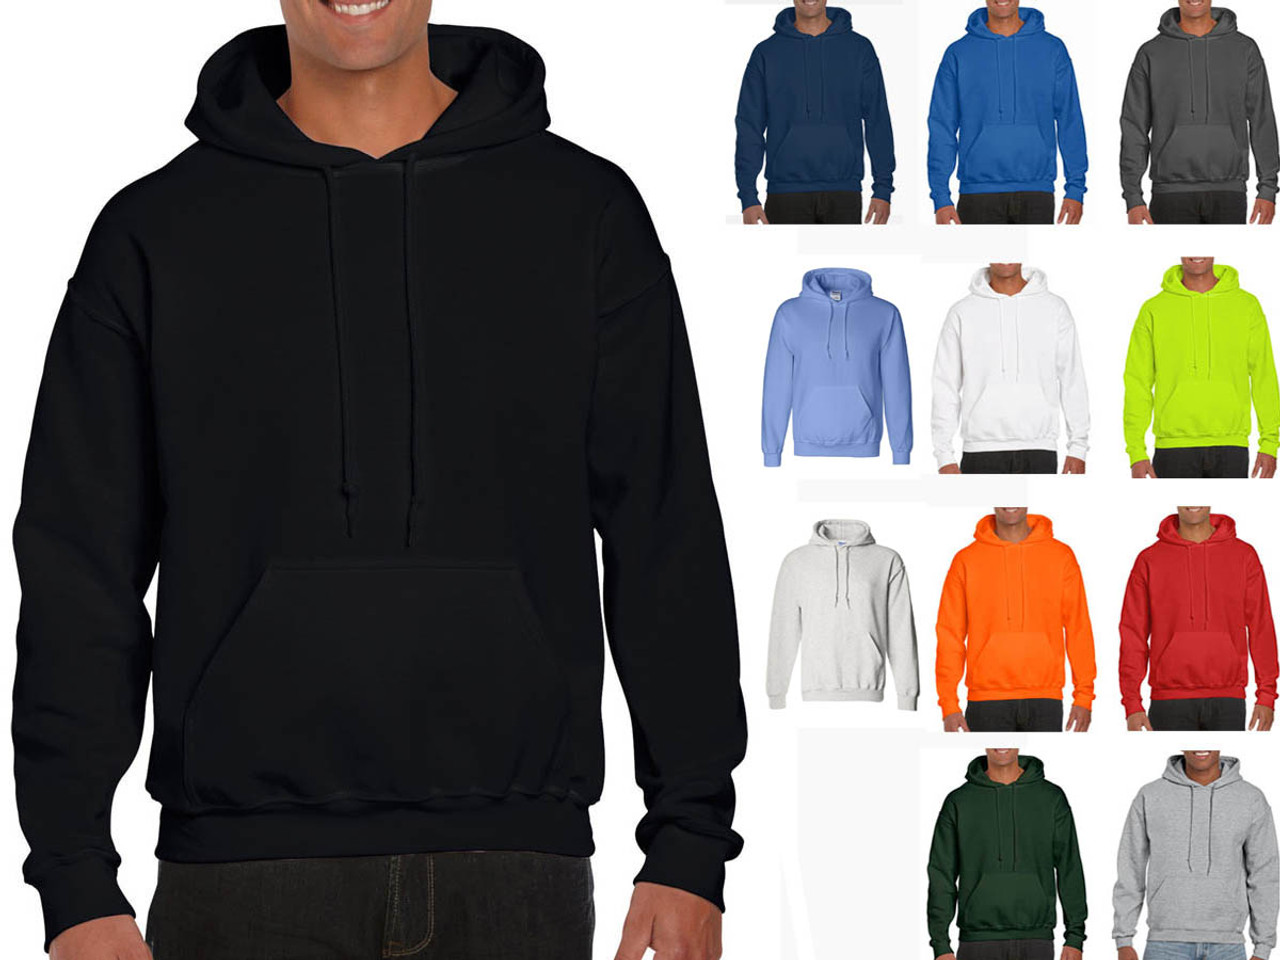 Gildan-Mens Sweatshirts-Hoodies-DryBlend adult hooded sweatshirt 